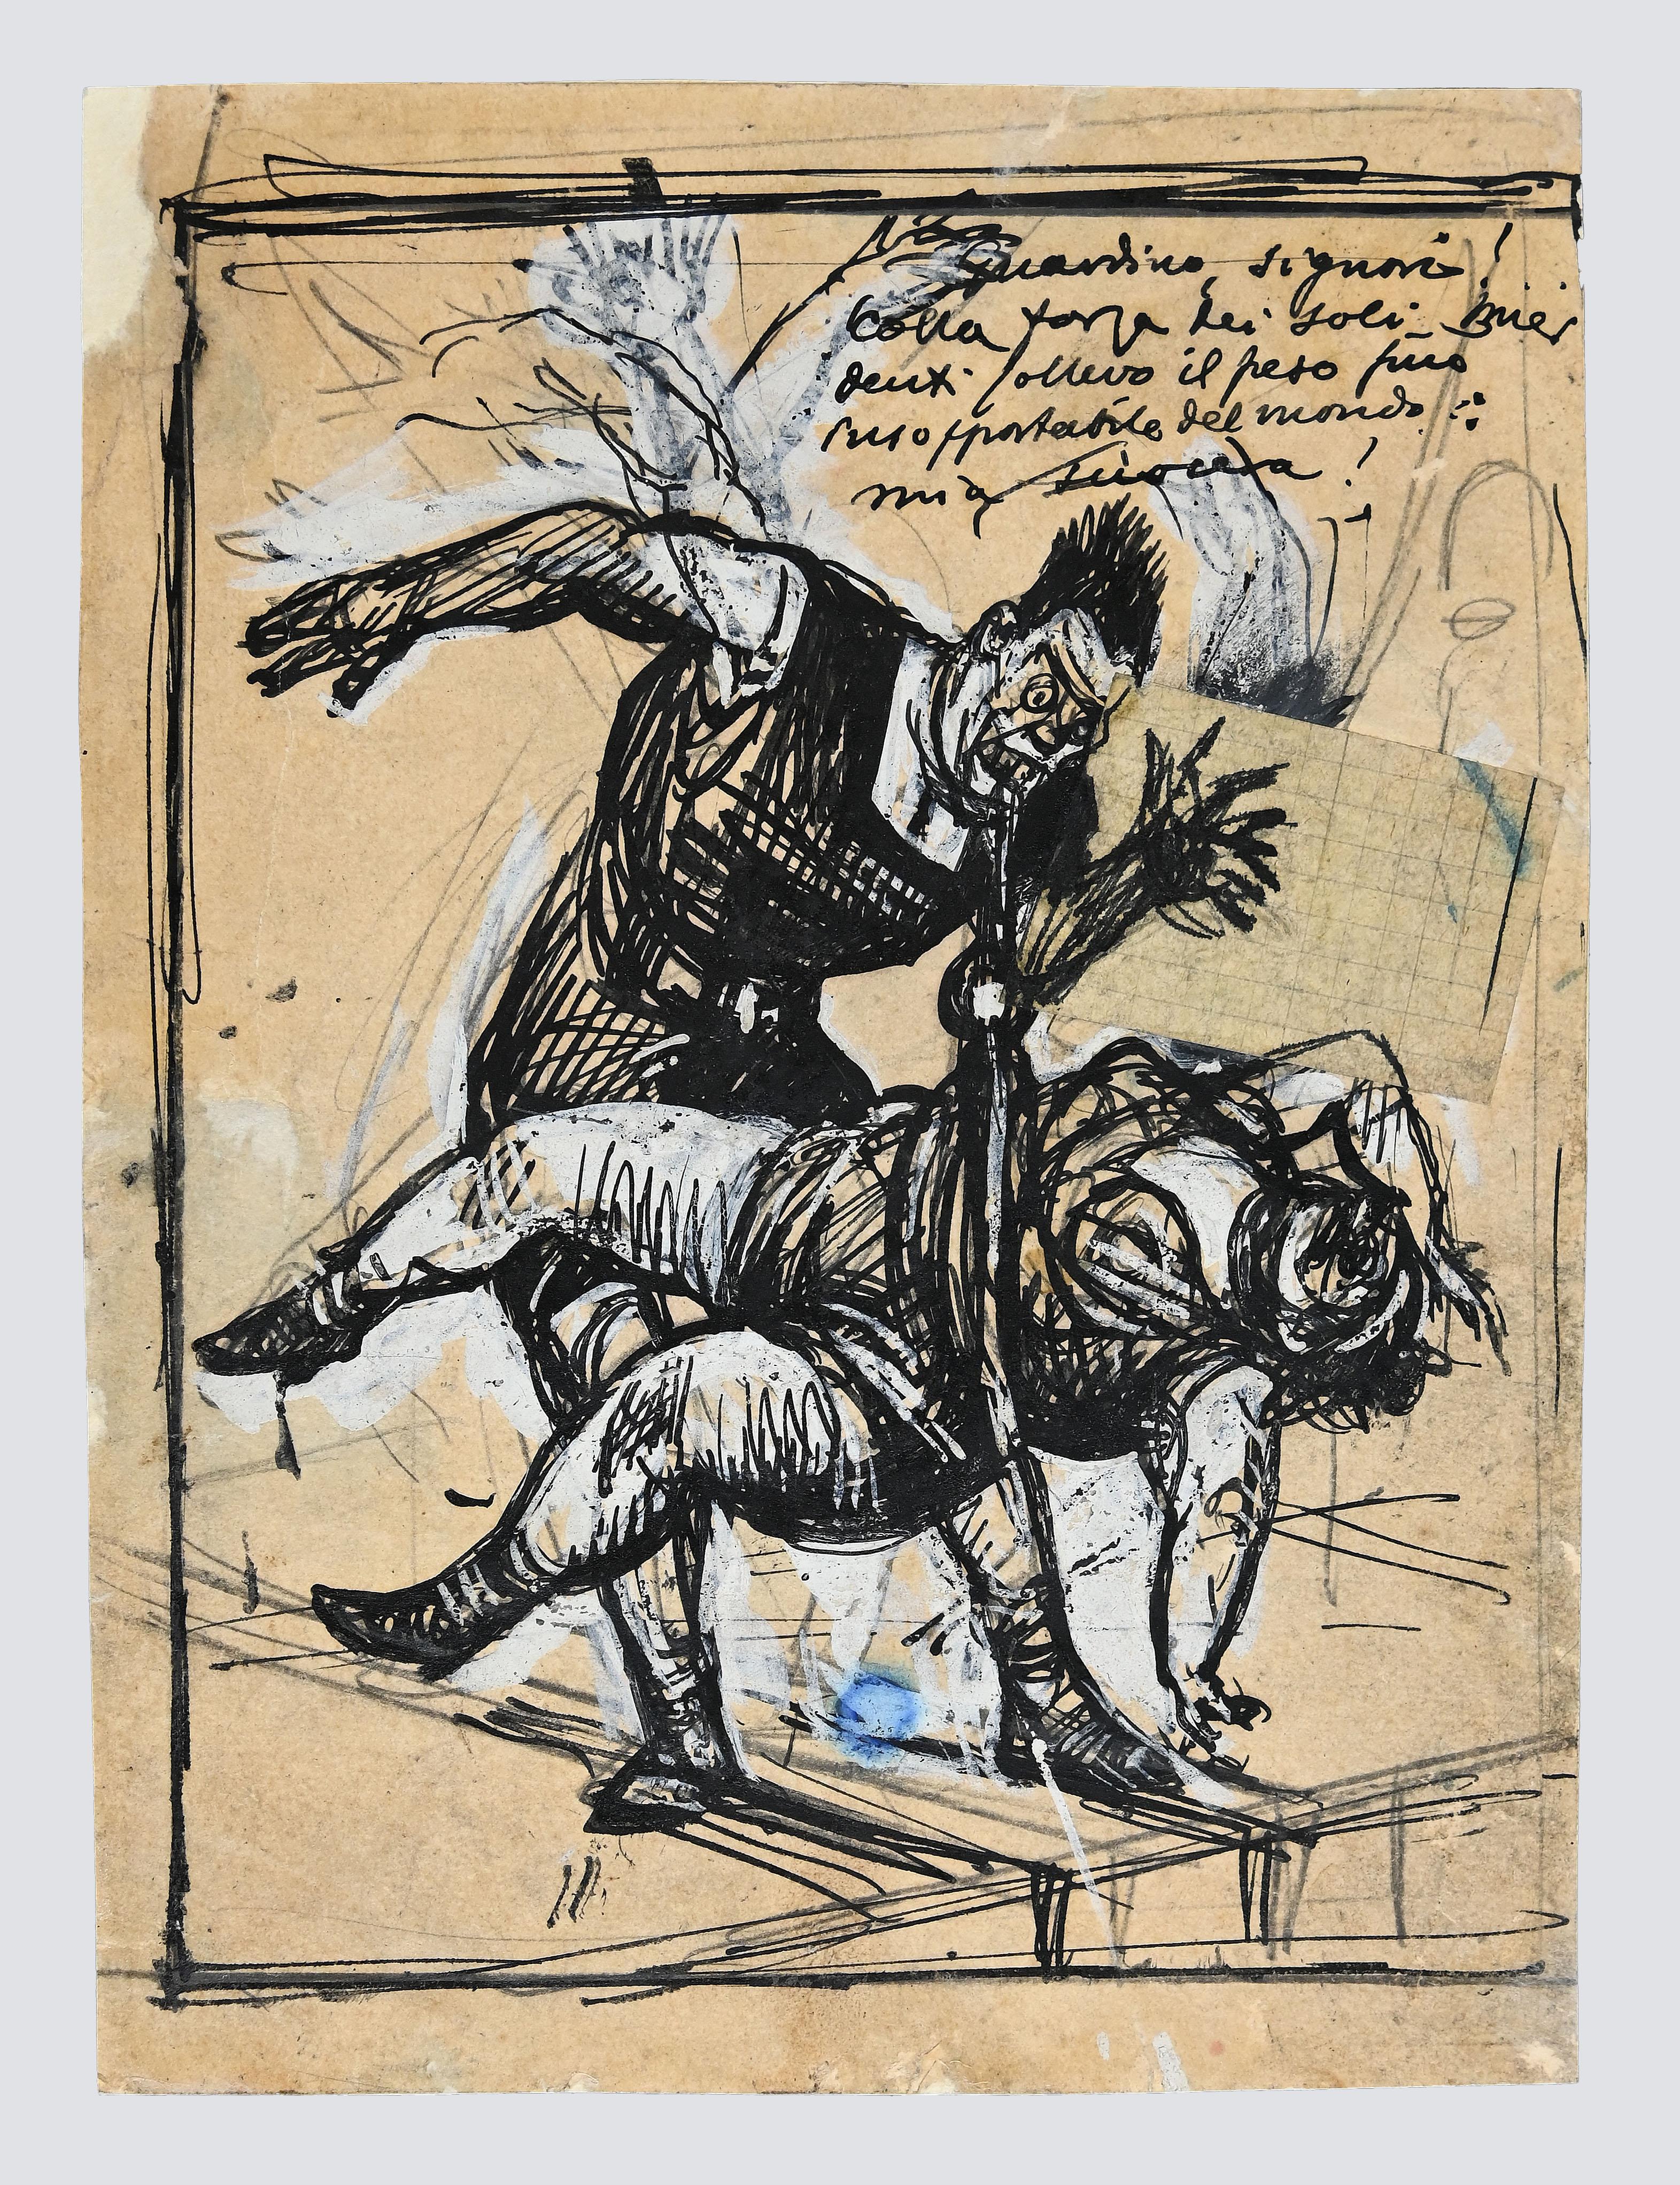 Gabriele Galantara Figurative Art - At the Circus - Original Ink Drawing by G. Galantara - Early 20th Century